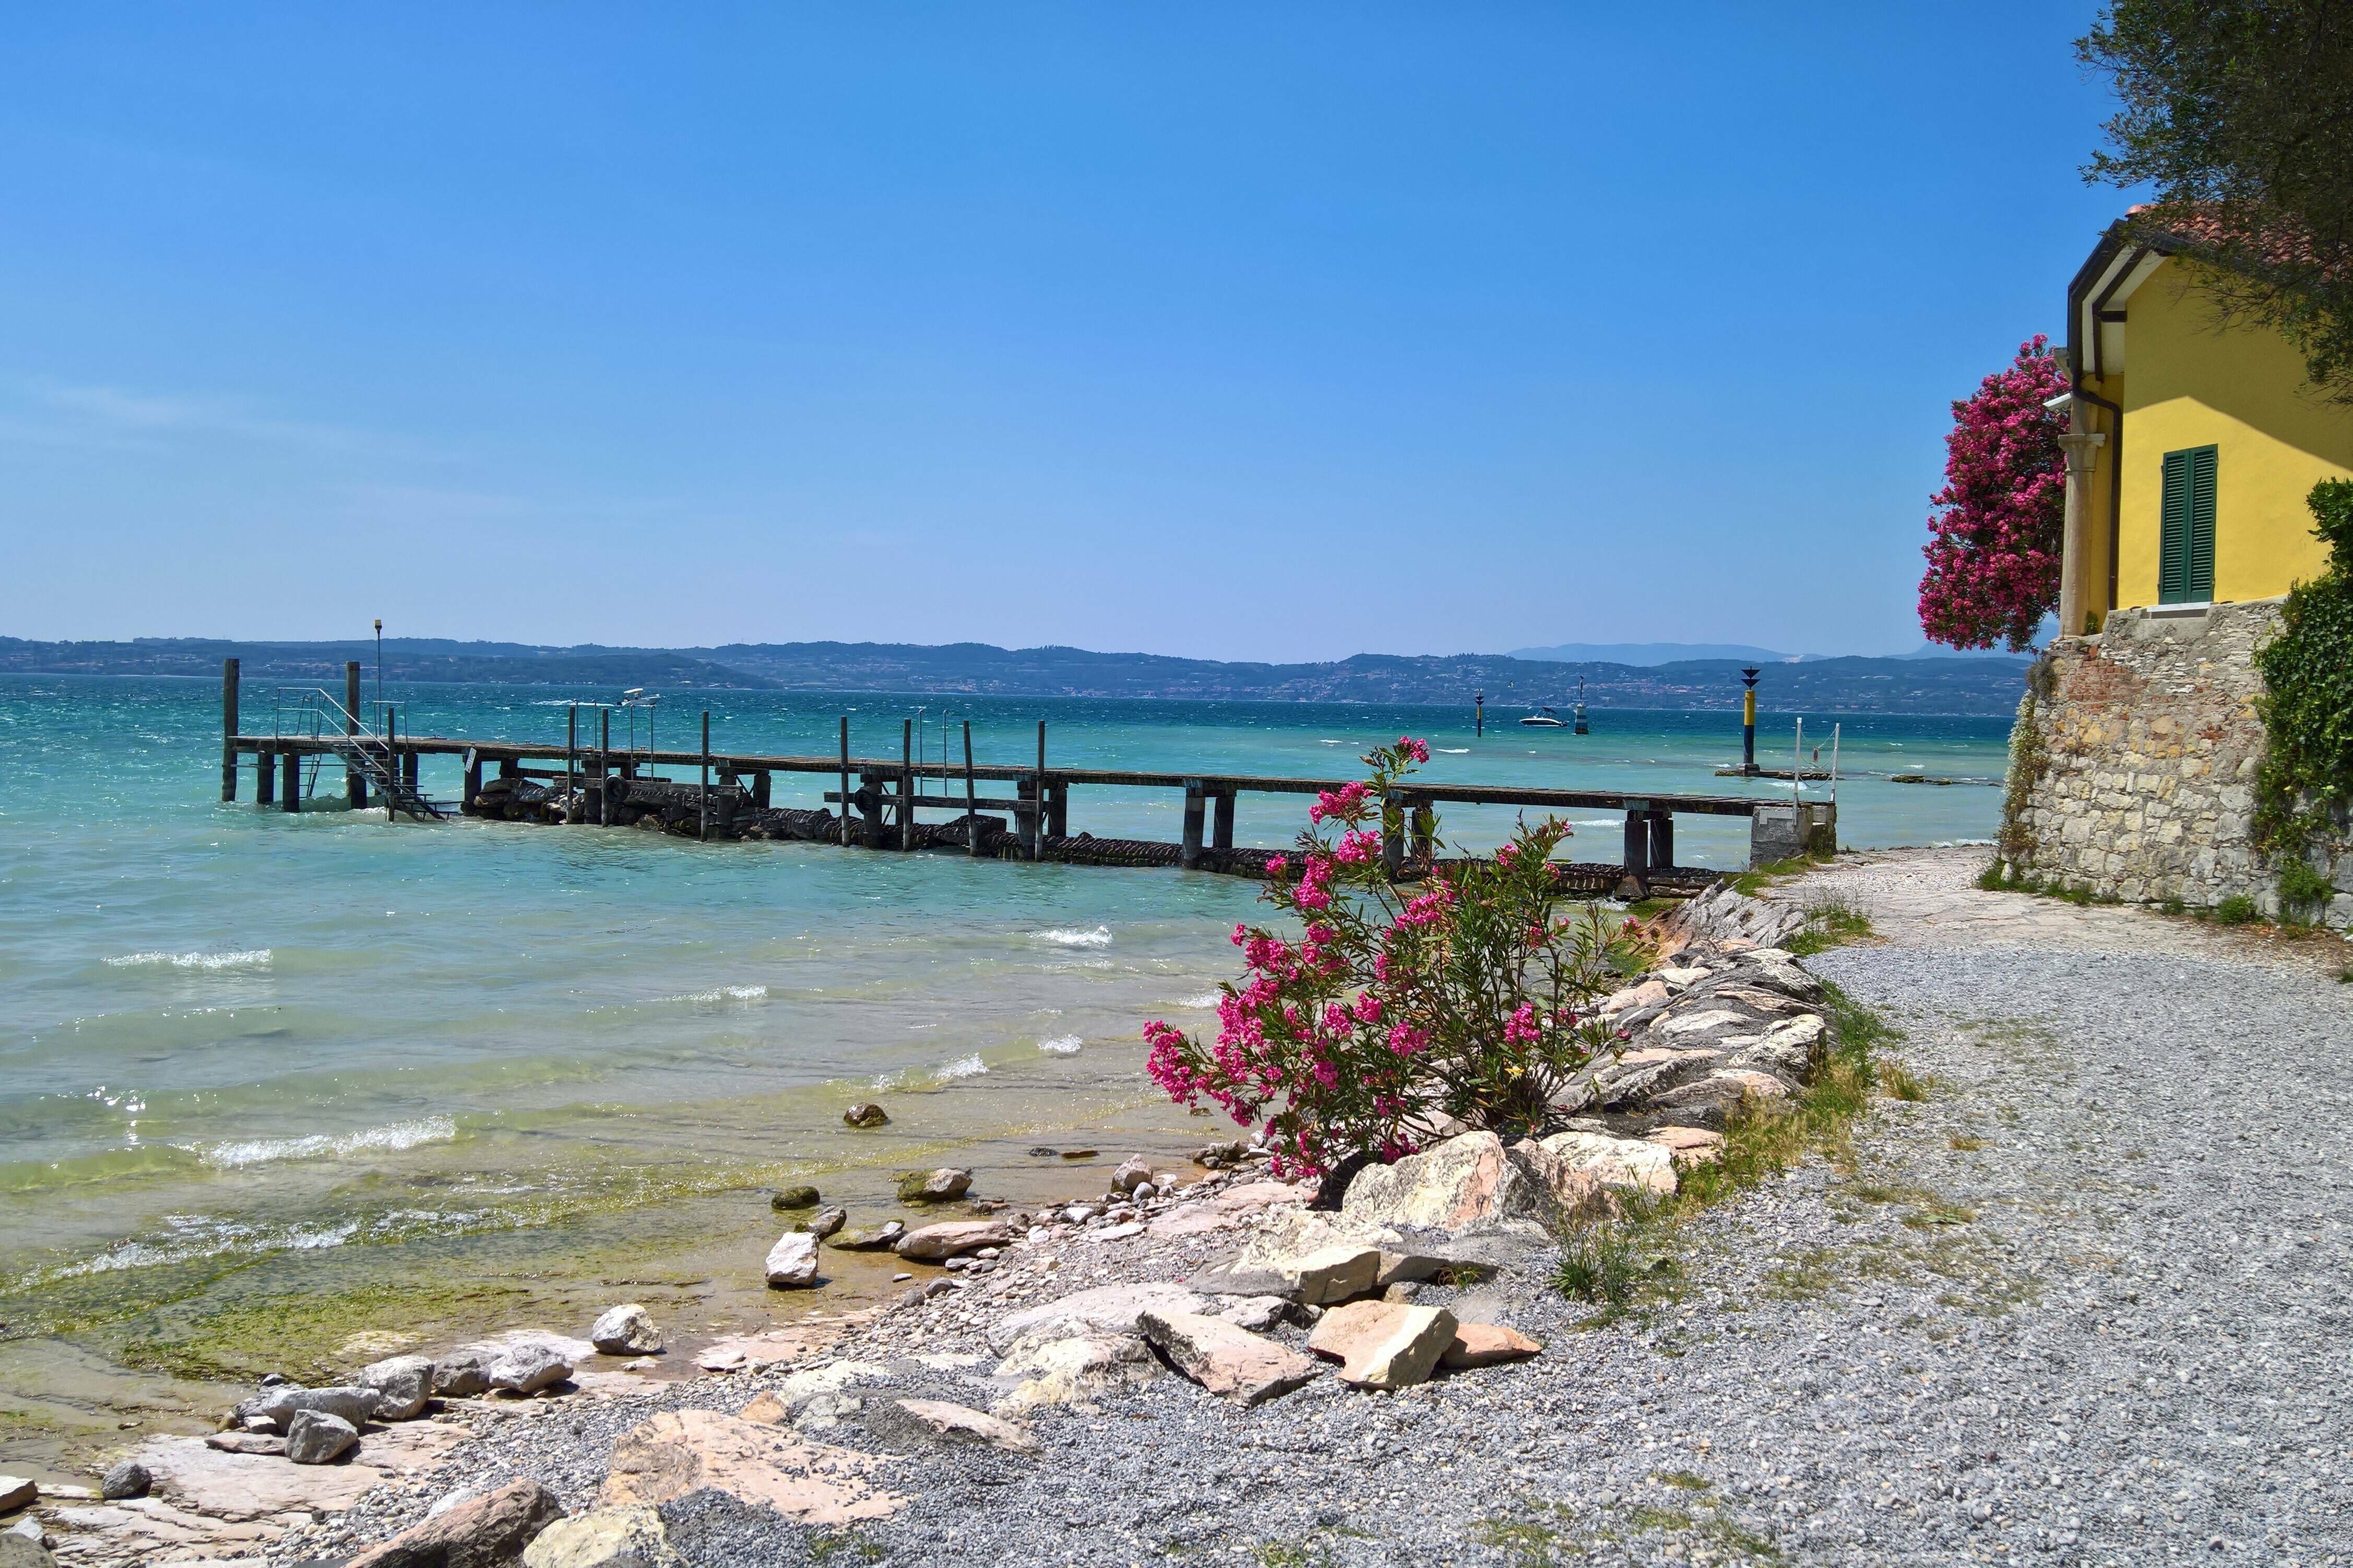 Nivelul de apă foarte scăzut al lacului Garda, Italia, șochează turiștii. „Apa nu mai era acolo” | GALERIE FOTO - Imaginea 7